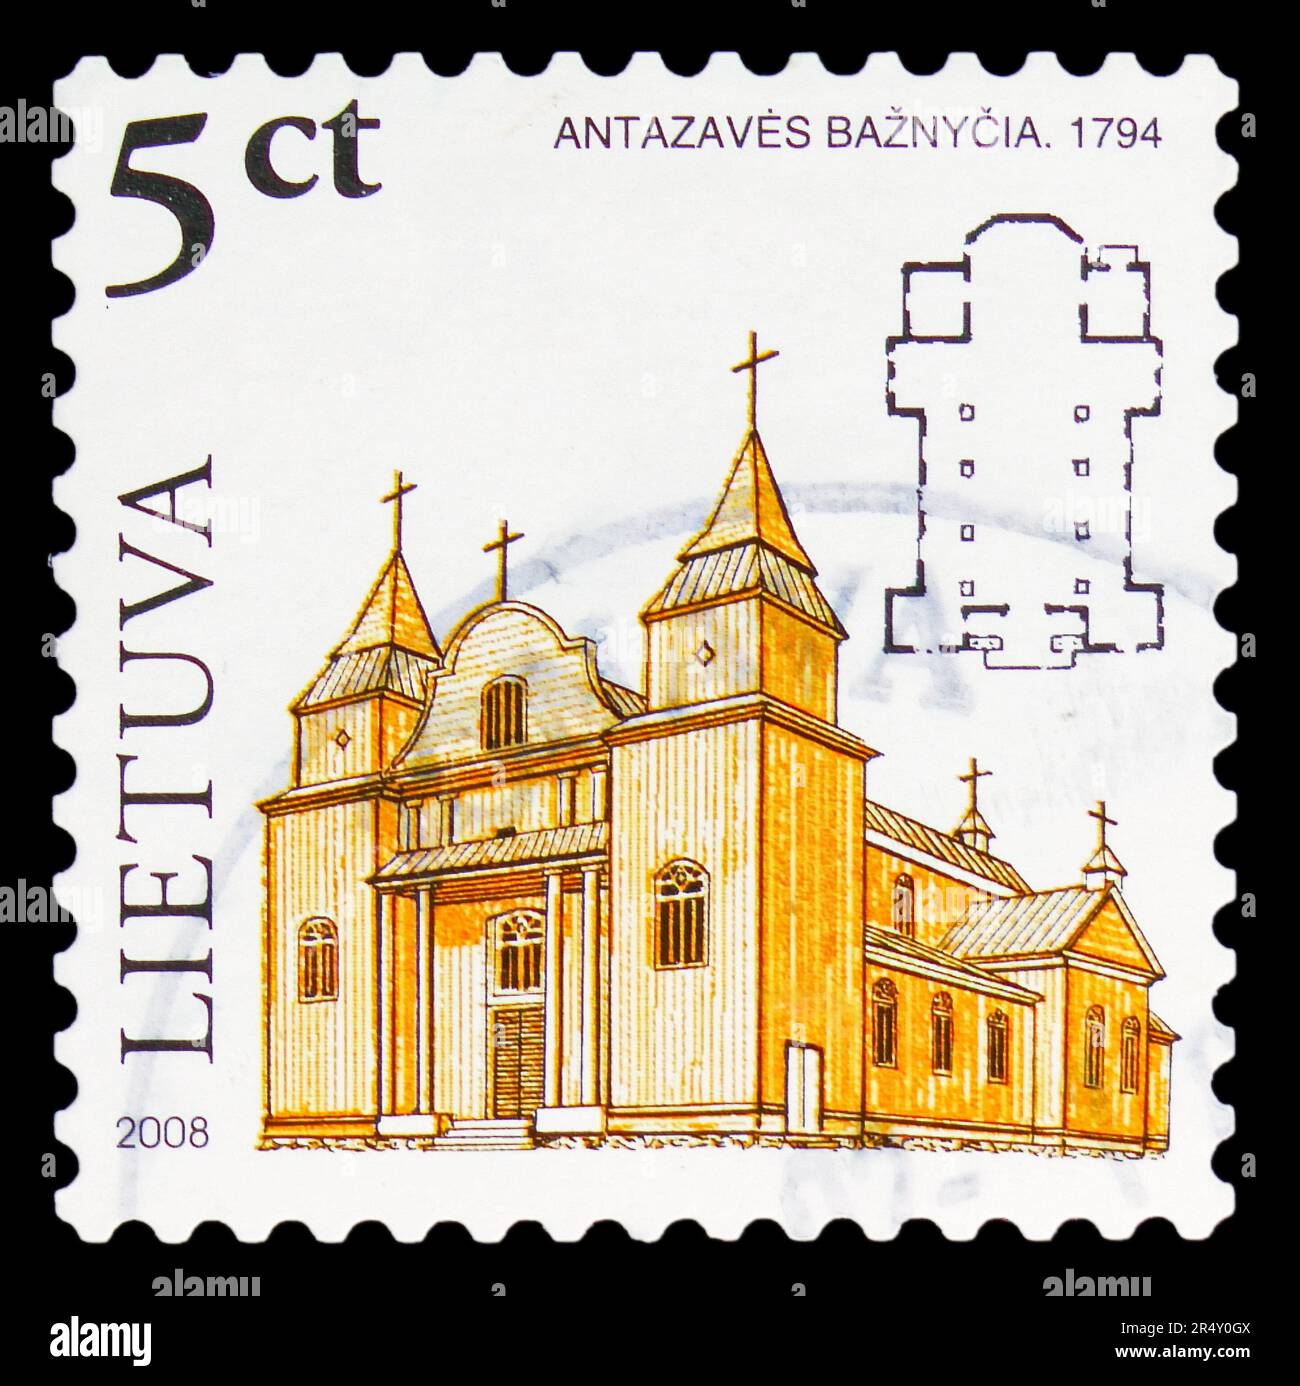 MOSCOU, RUSSIE - 18 MAI 2023: Timbre-poste imprimé en Lituanie montre l'église d'Antazave 1794, Définitifs - série des églises en bois, vers 2008 Banque D'Images